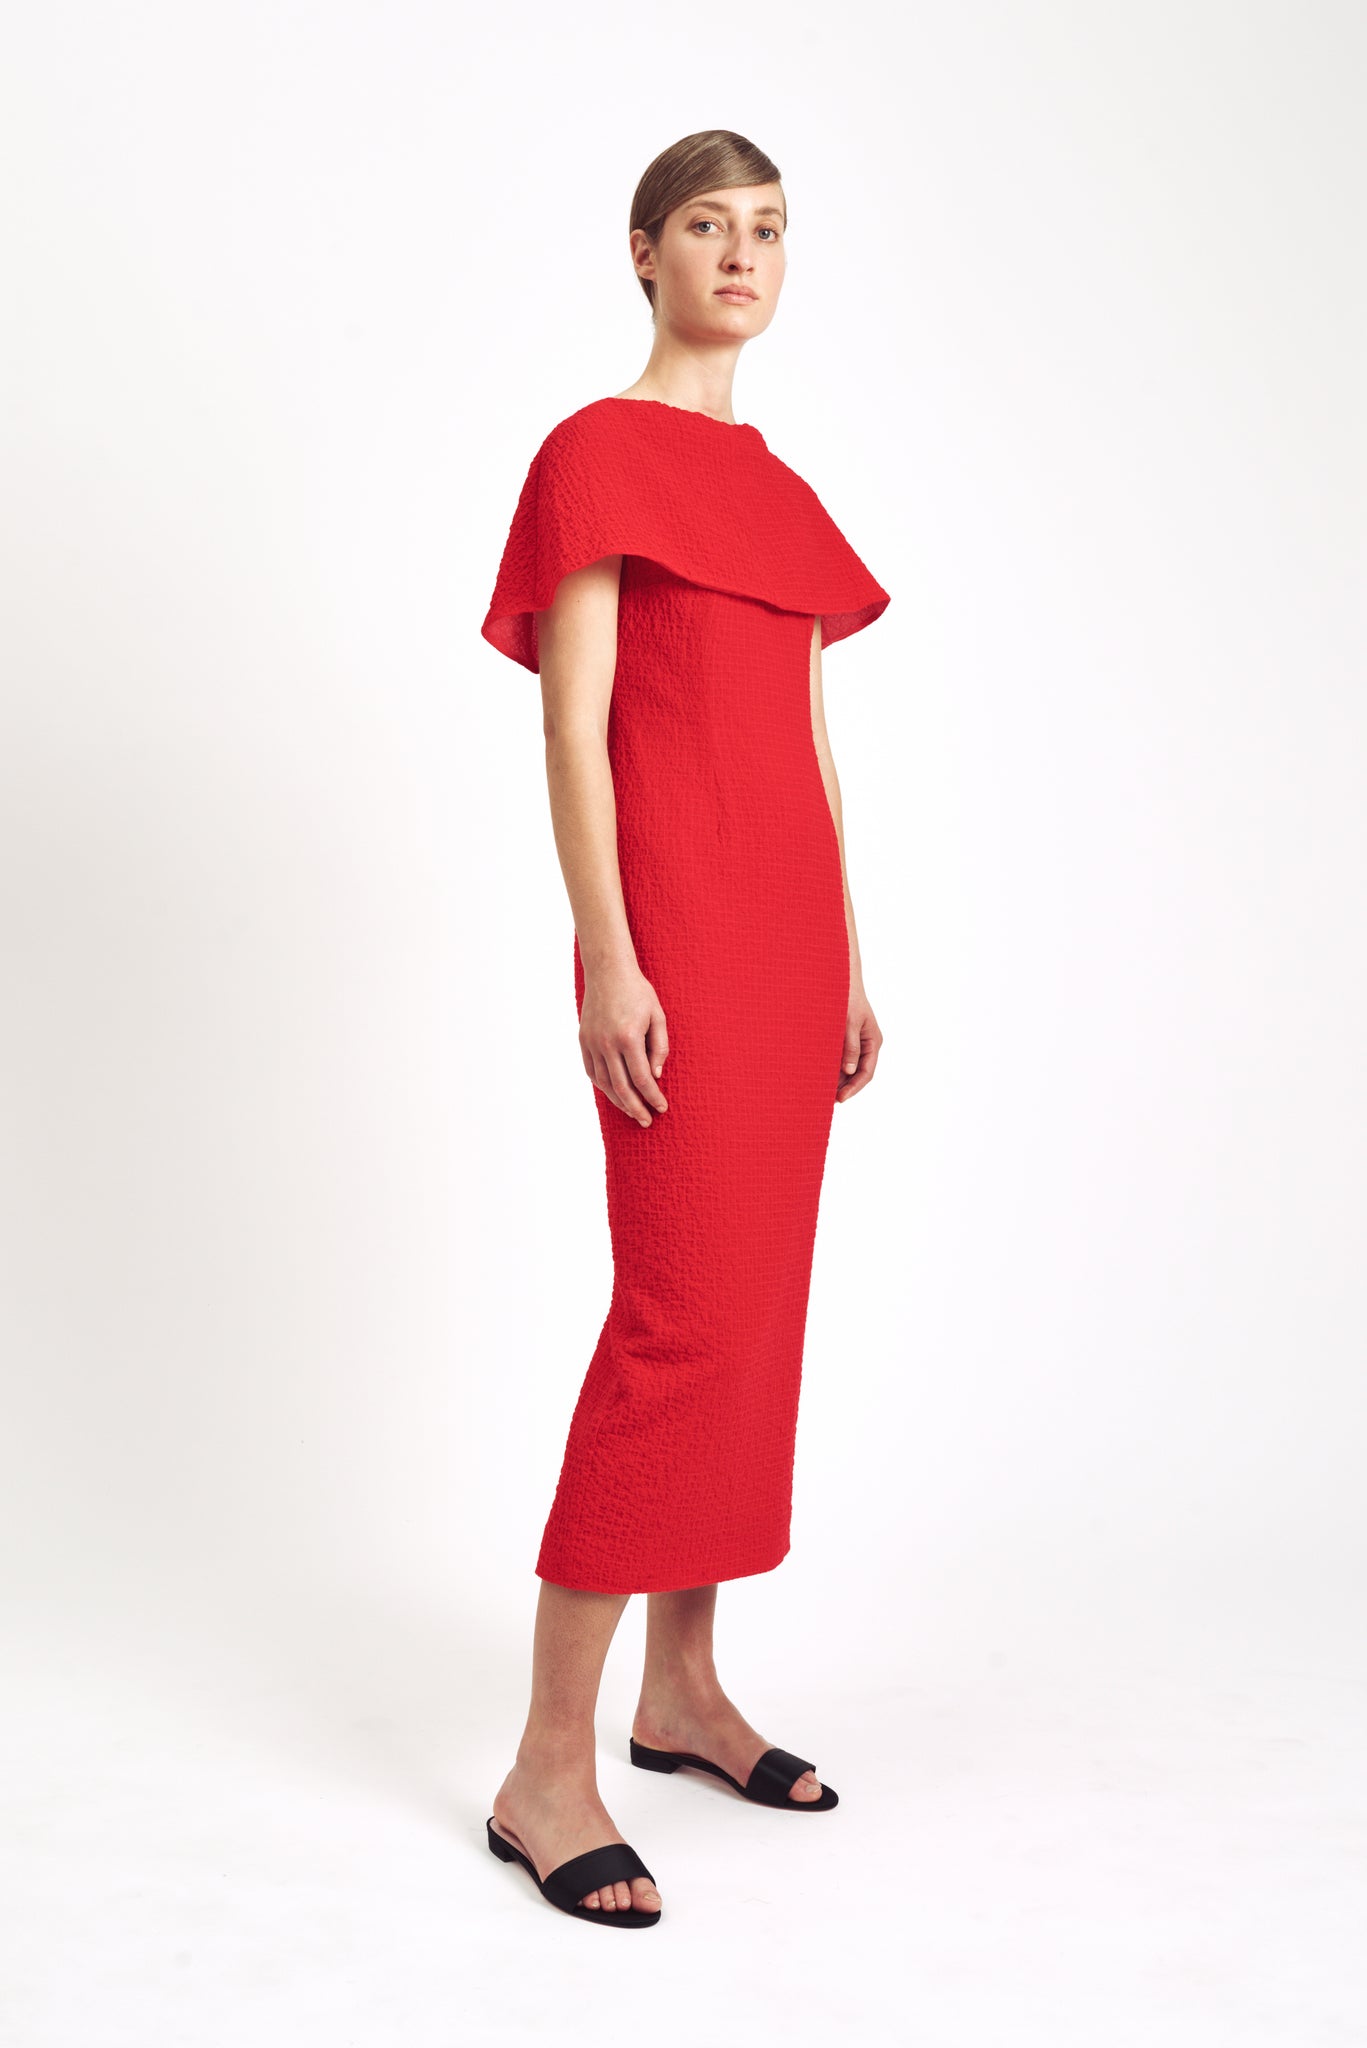 Blaine Dress| Red Cotton Cloque Cape Front Dress | Emilia Wickstead